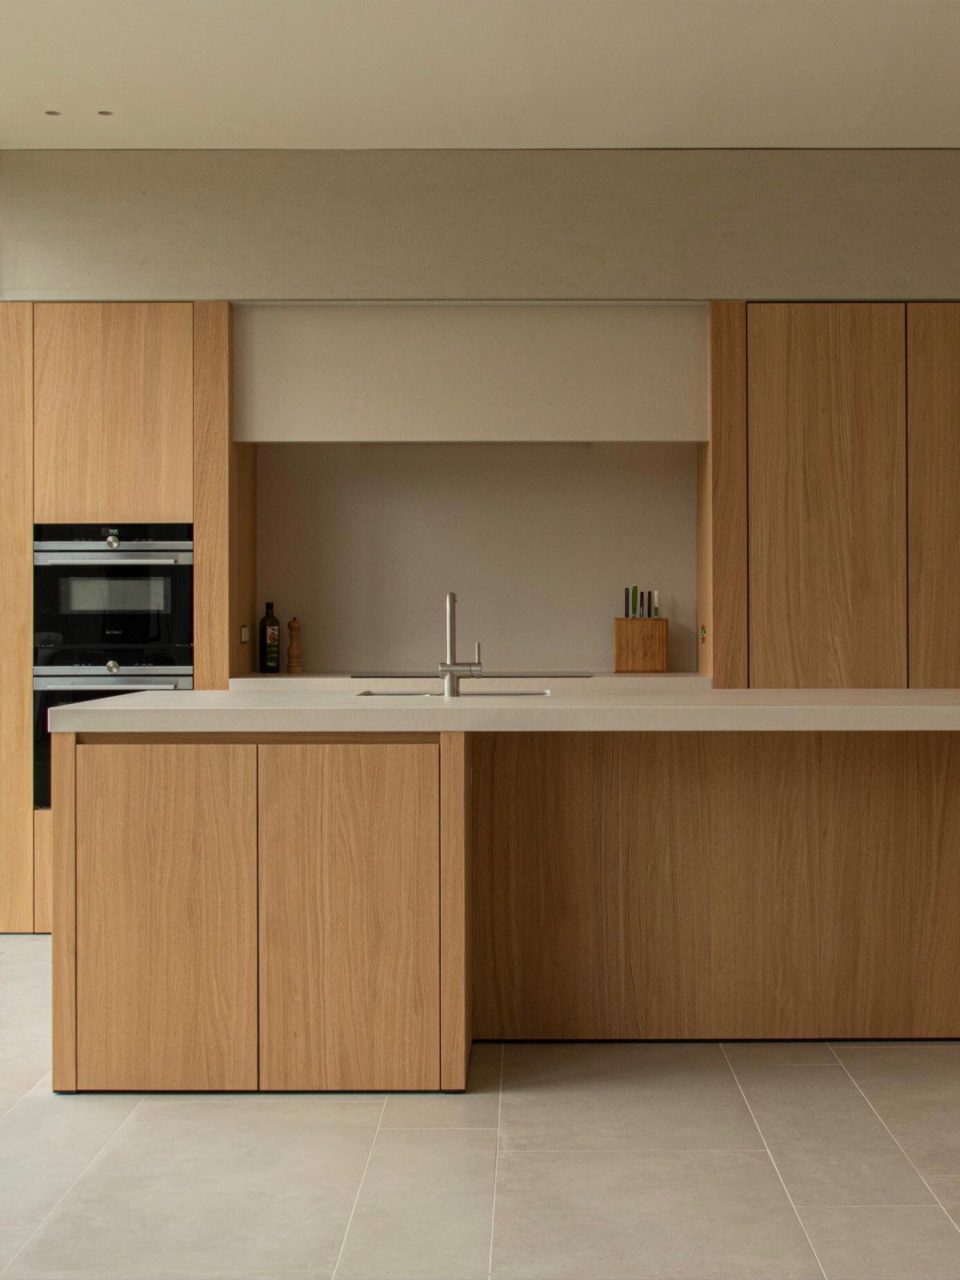 浅色木纹橱柜77米色石英石台面 颜值真的很高级 厨房橱柜选择木